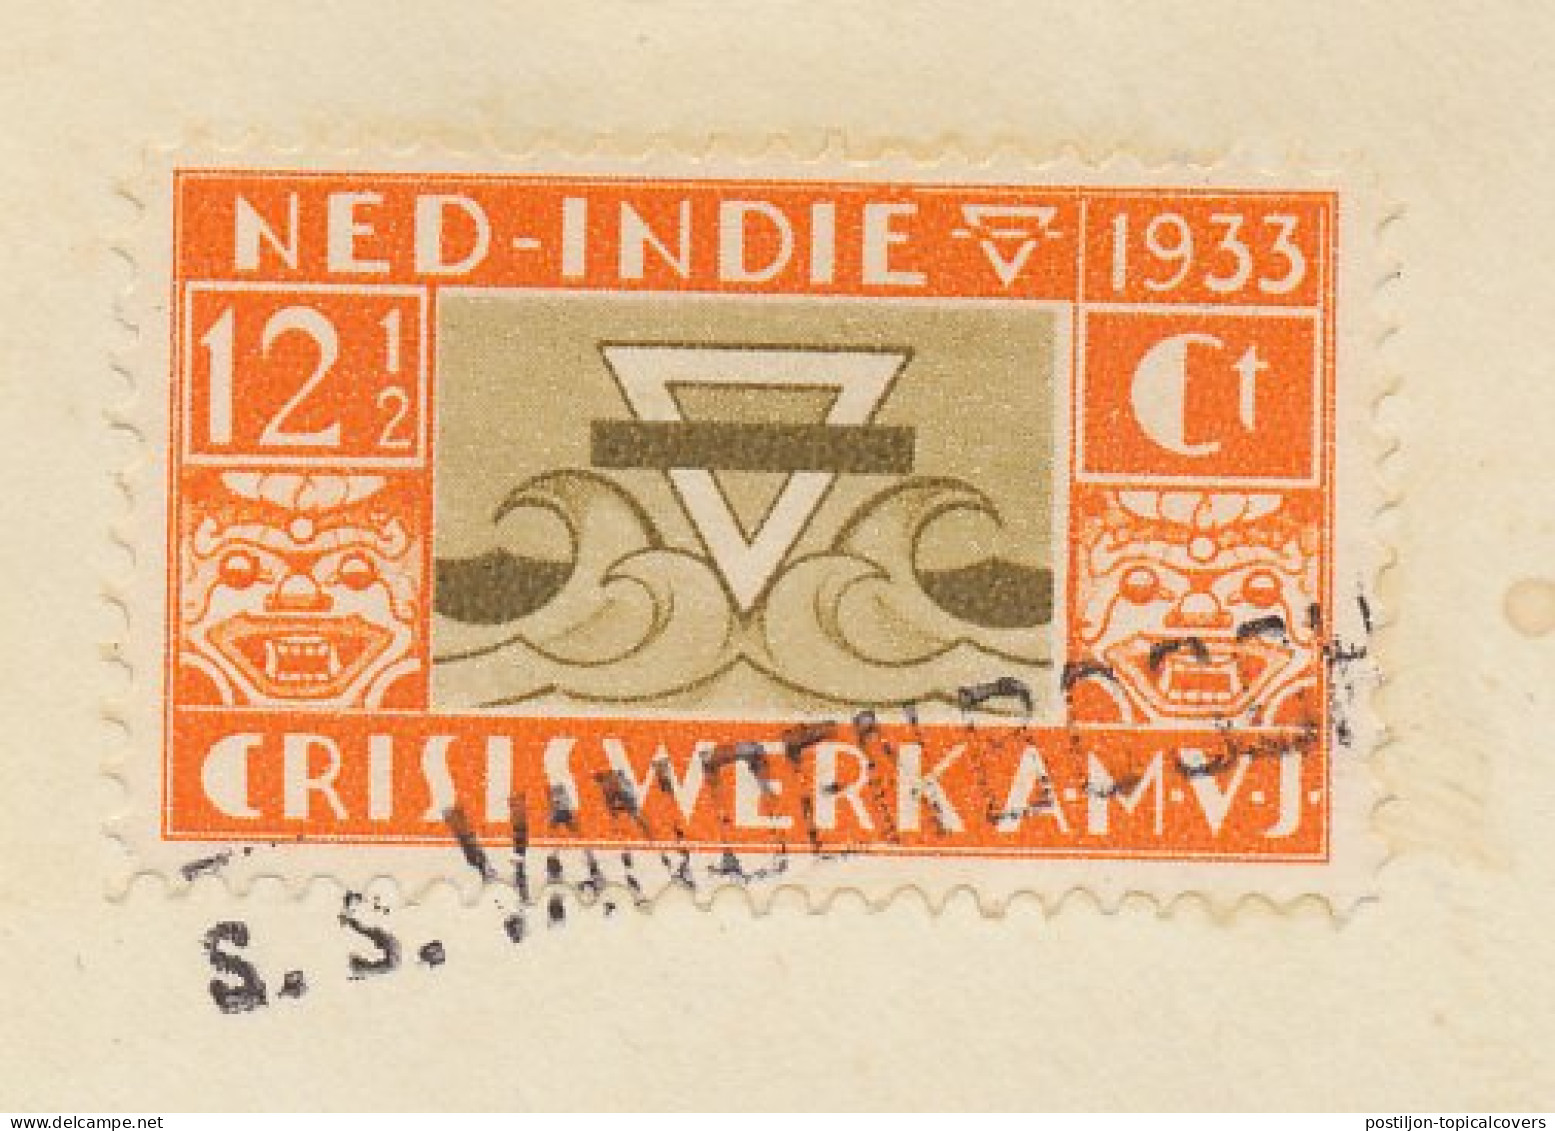 Ship Mail Netherlands Indies - Postmark S.s.VANDENBOSCH 1934 - Indie Olandesi